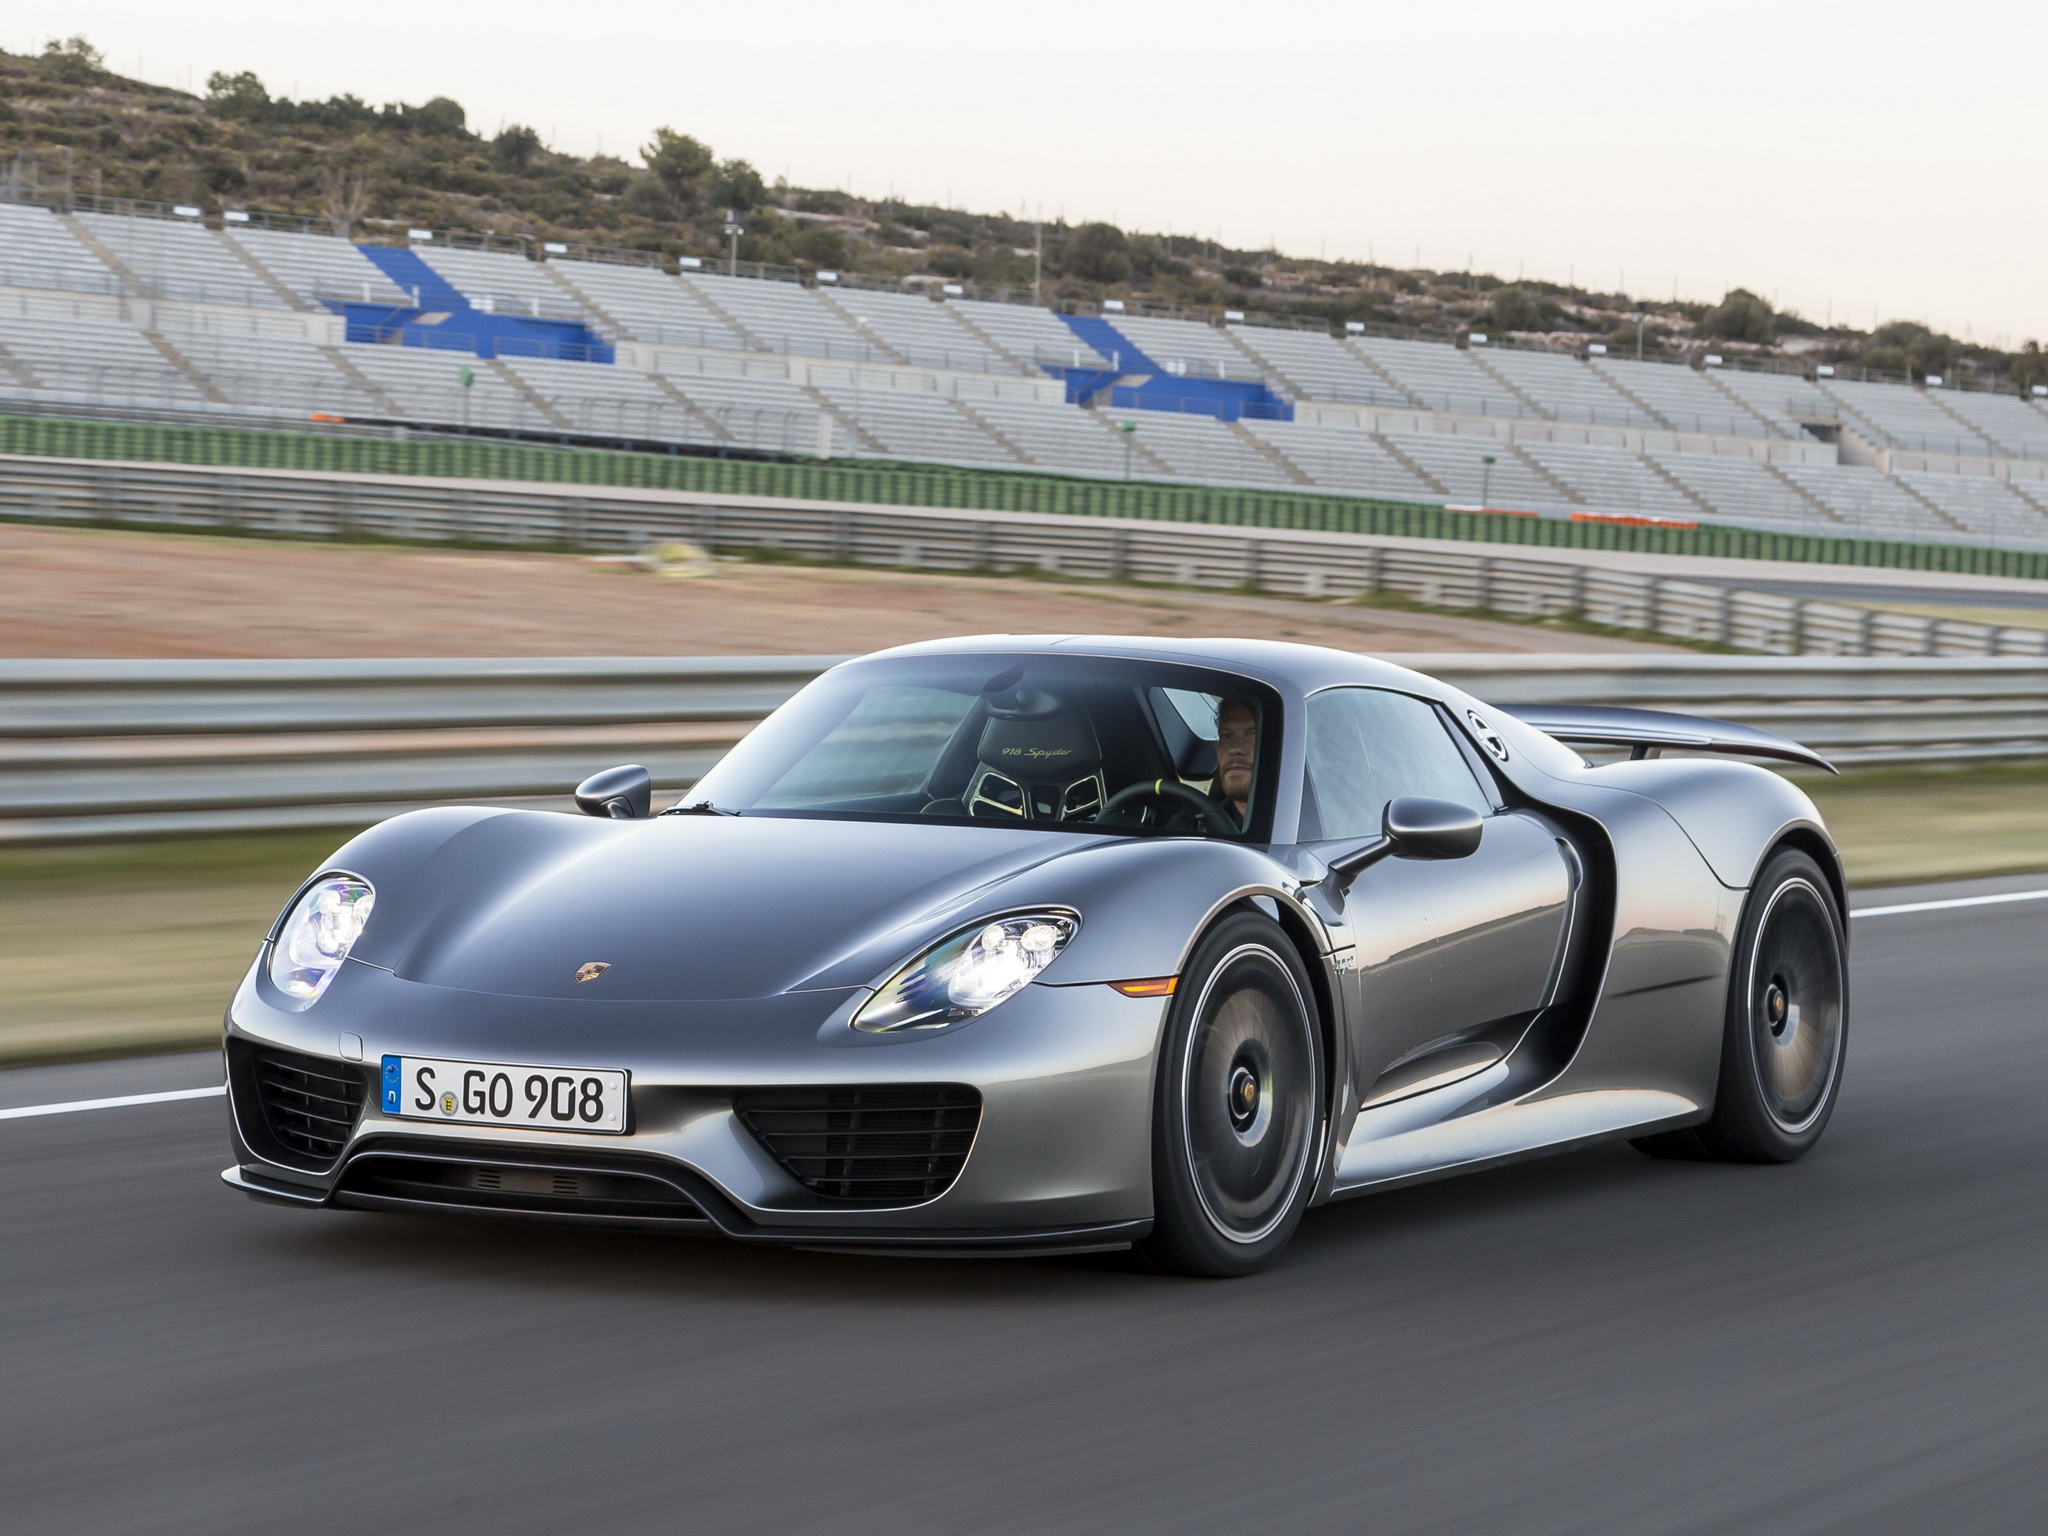 Porsche проведет отзыв суперкаров 918 Spyder